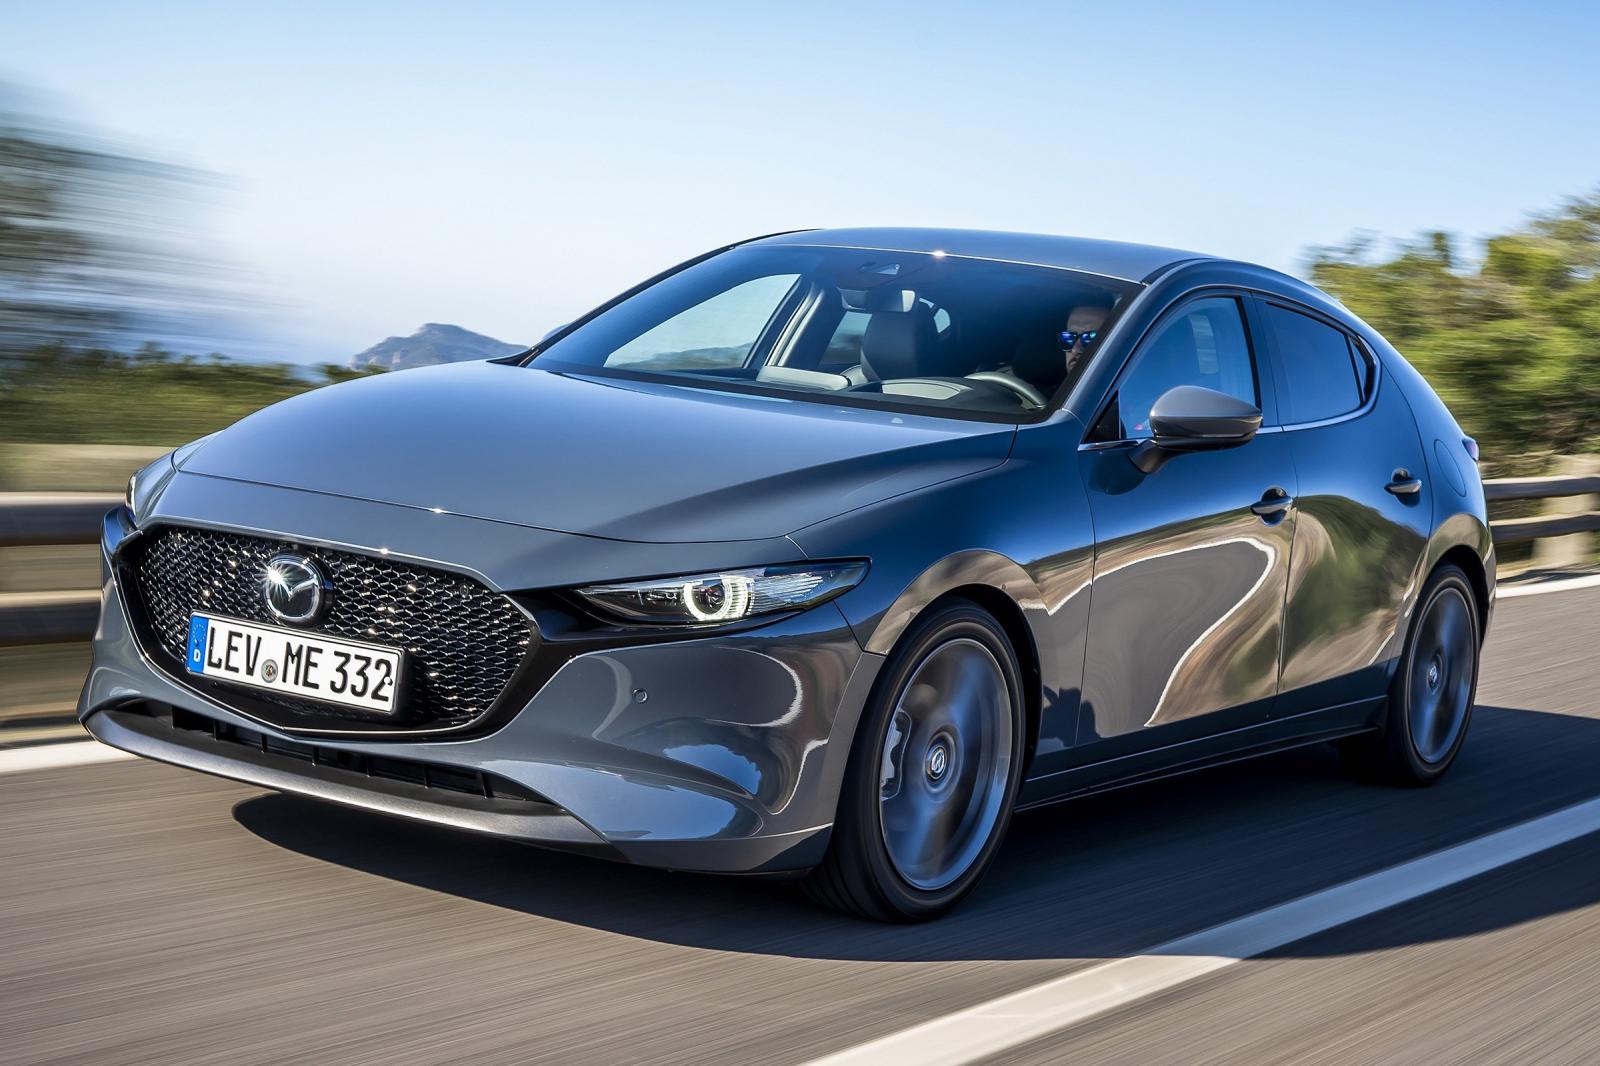 สัมผัสการขับขี่ที่ล้ำสมัยและเร้าใจกับ All New Mazda3 2019